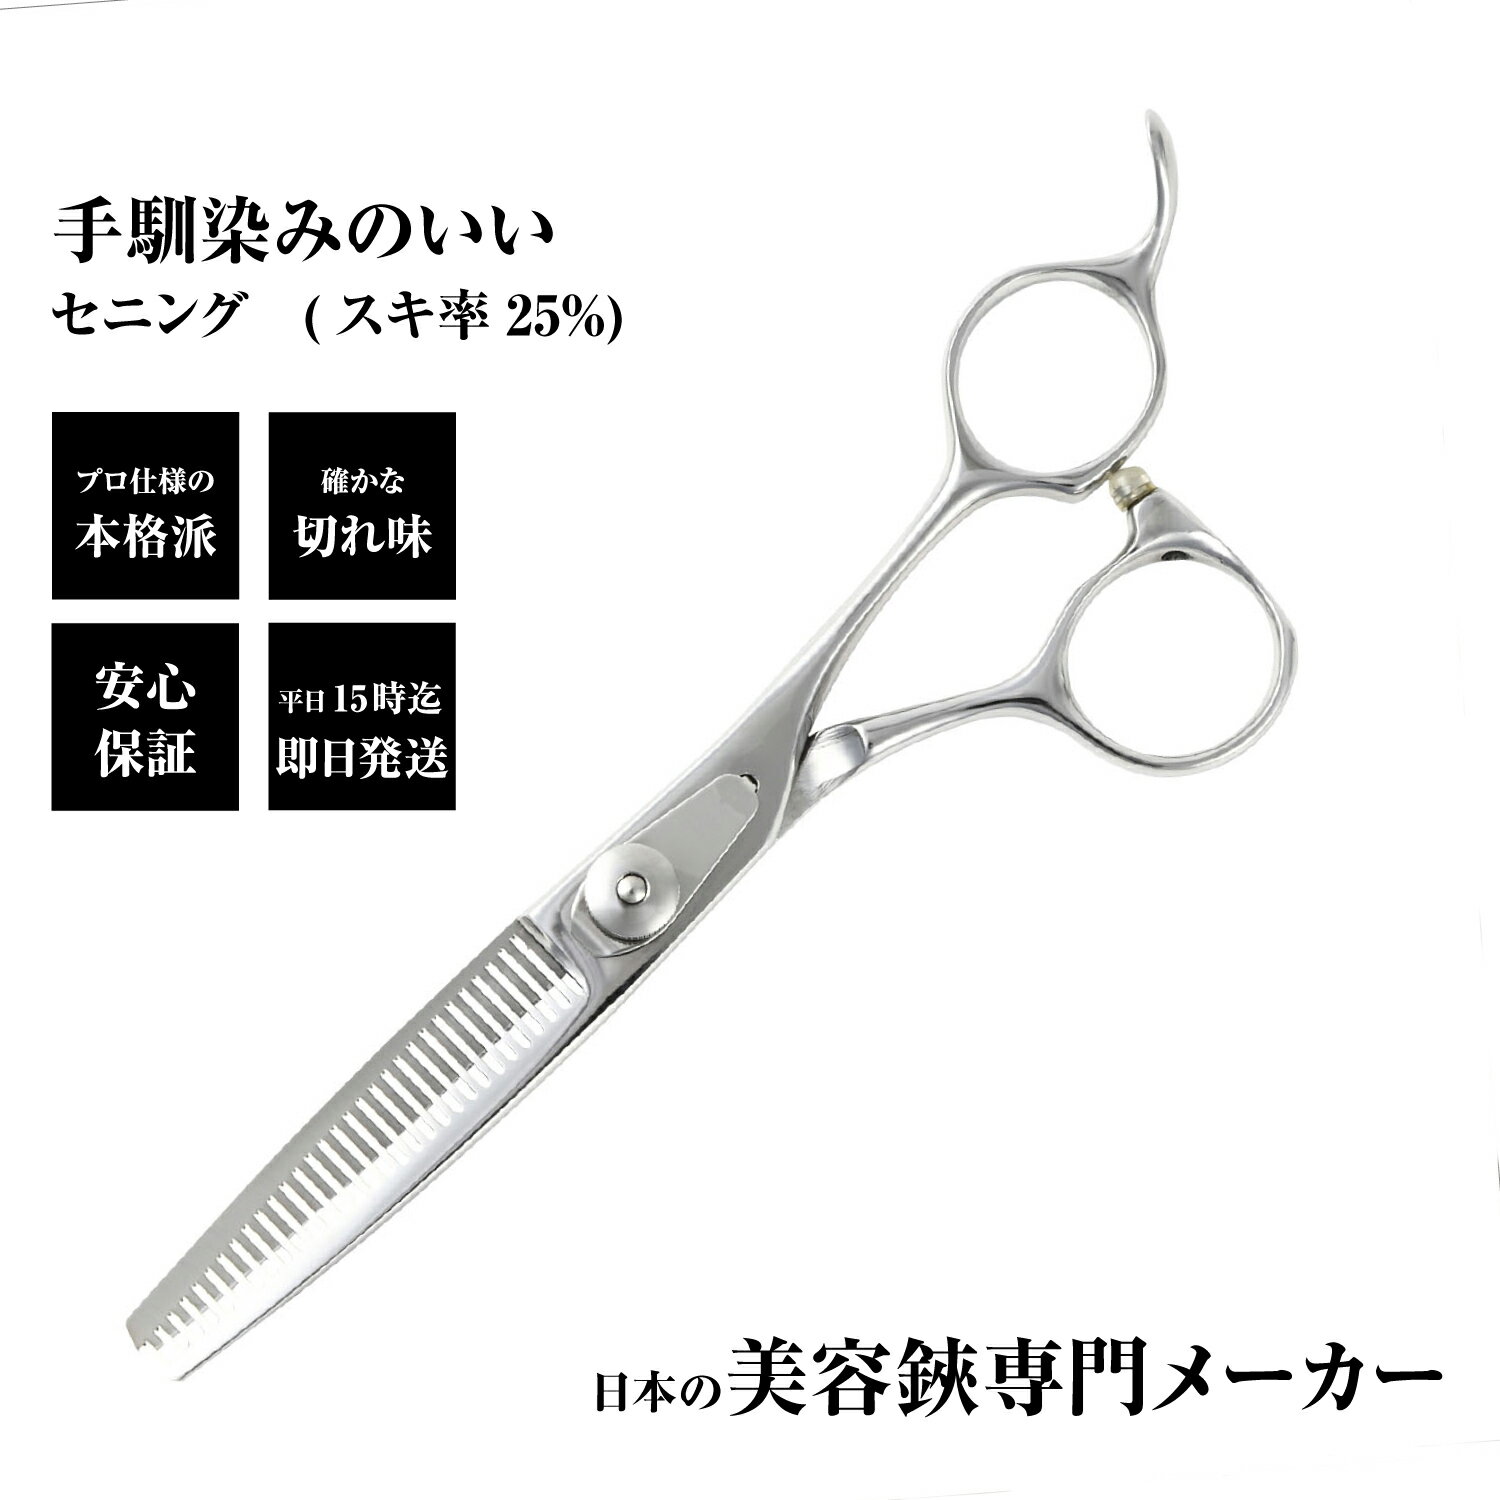 日本の鋏専門メーカー 鍛造仕上 / DEEDS CP-01 セニング 単品/ 美容師 理容 理容師 散髪 すきばさみ セニングシザー